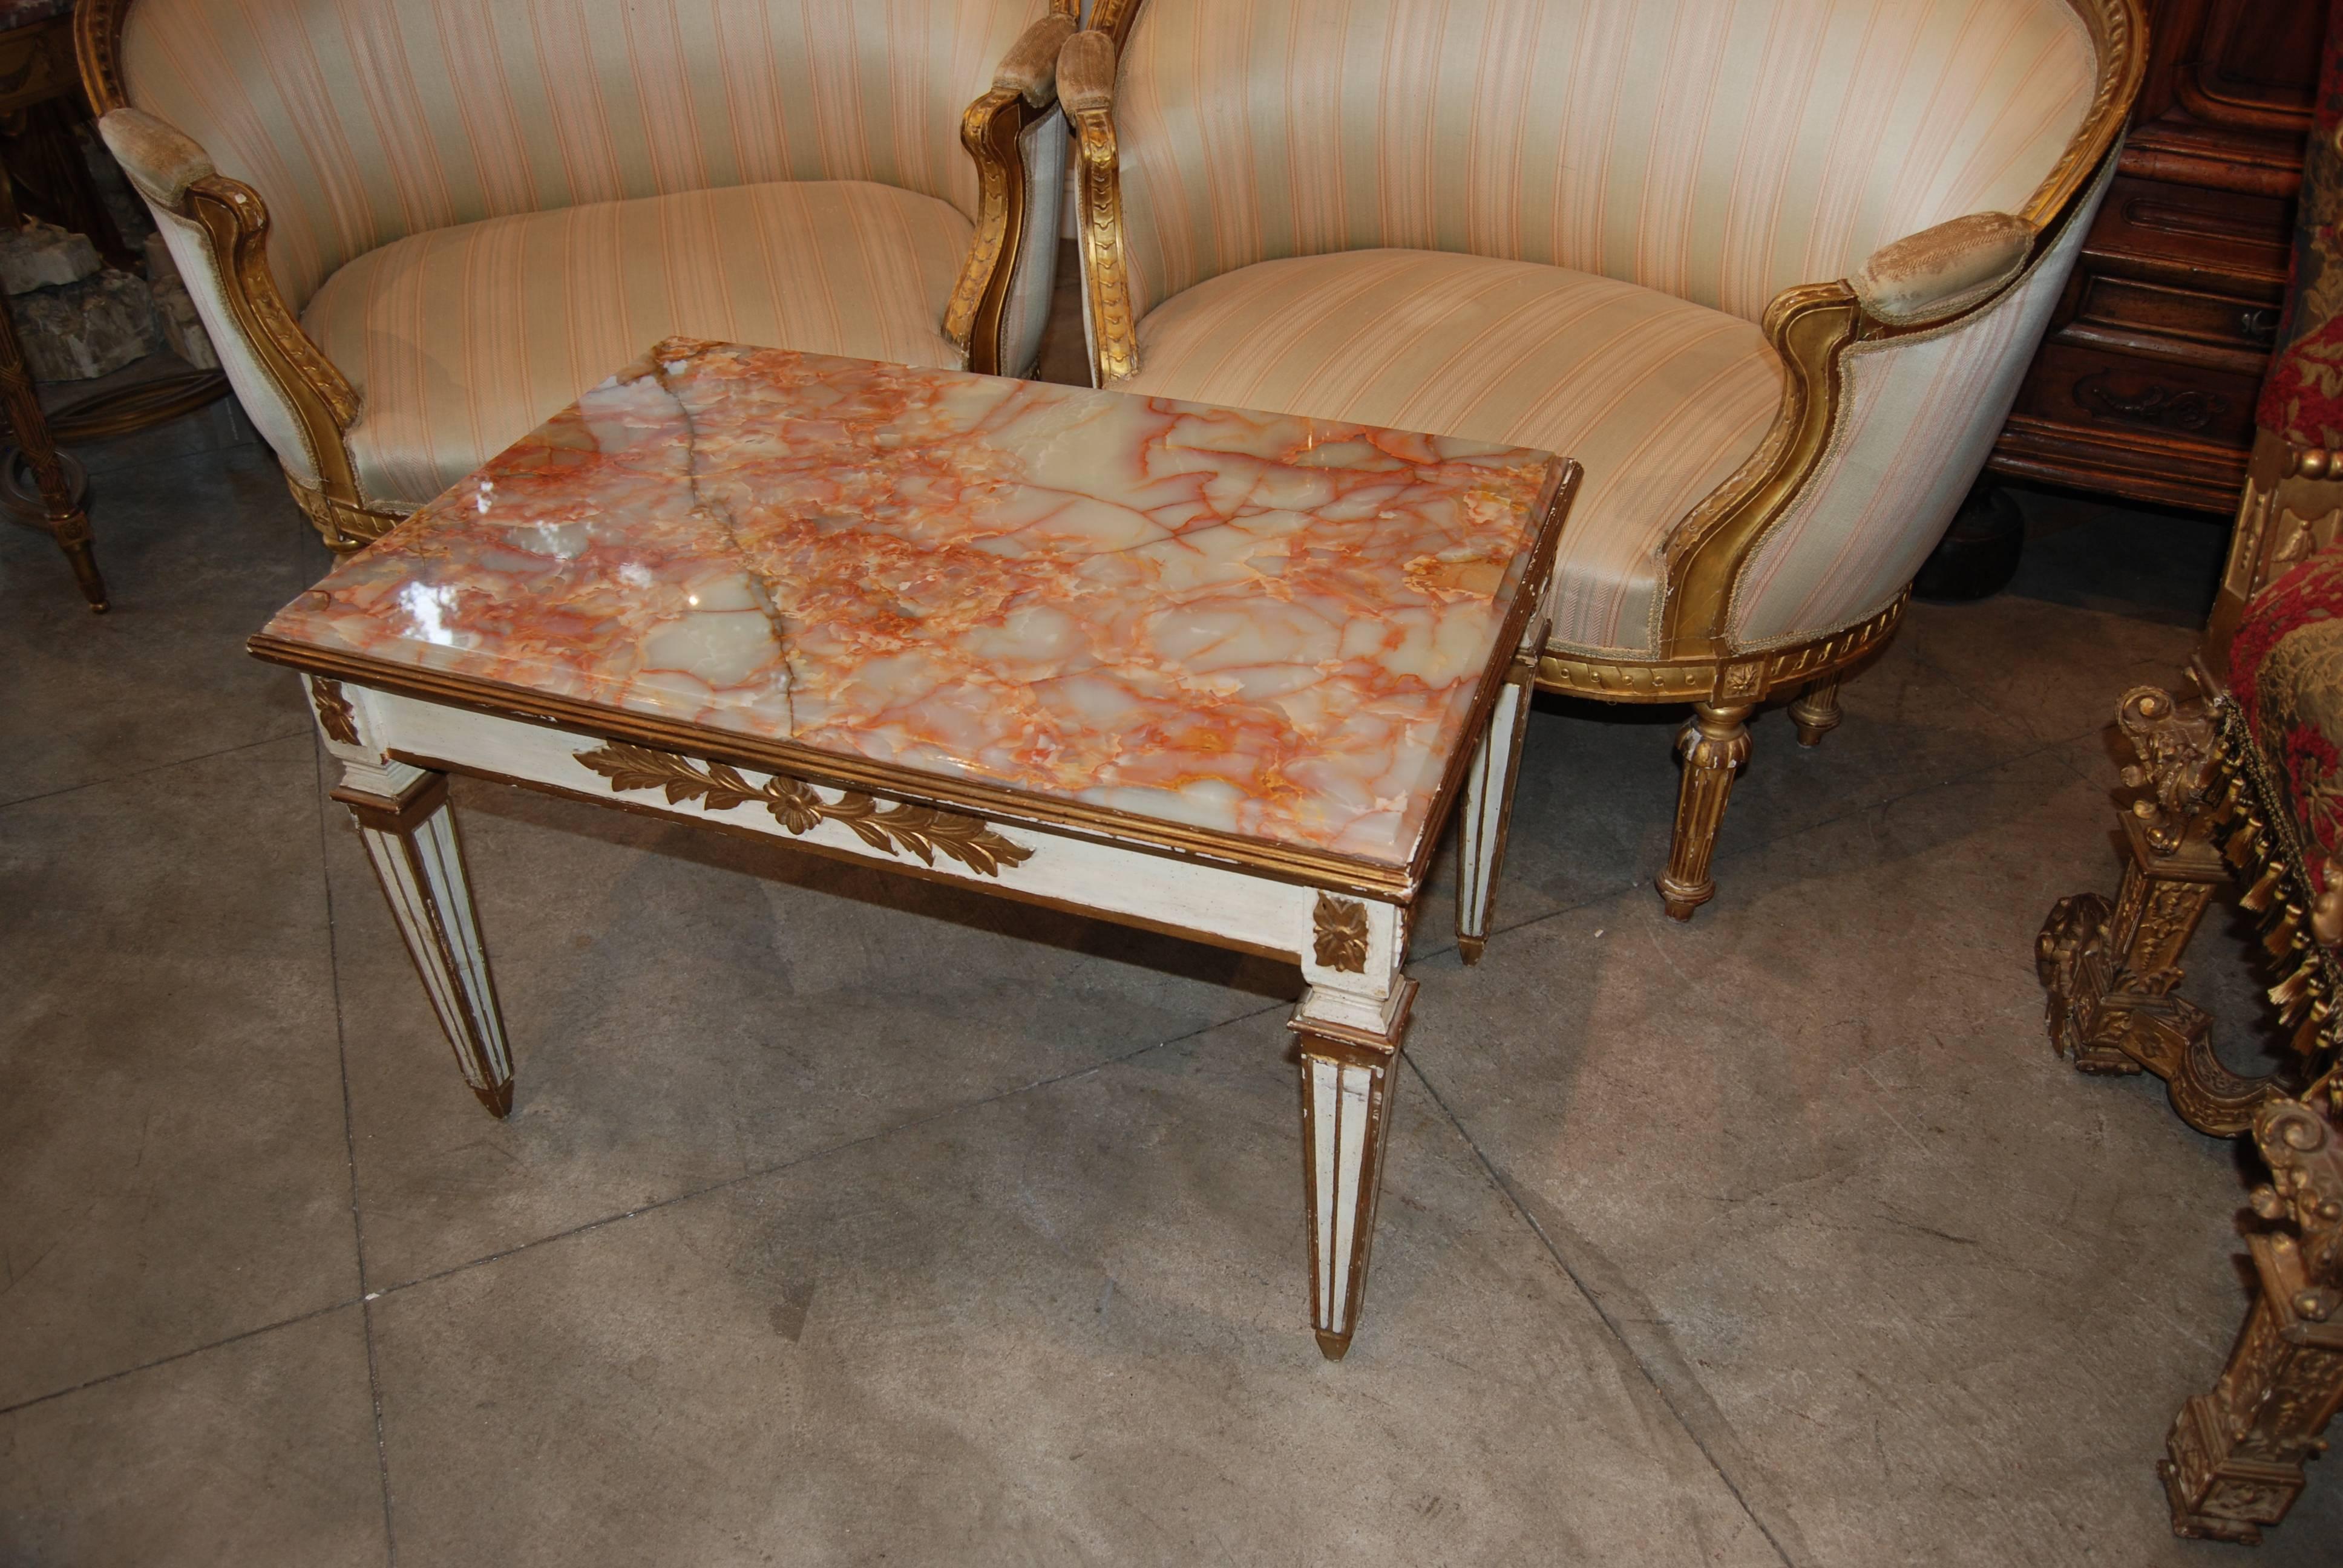 Magnifique table basse sculptée et peinte, avec plateau en onyx d'origine.